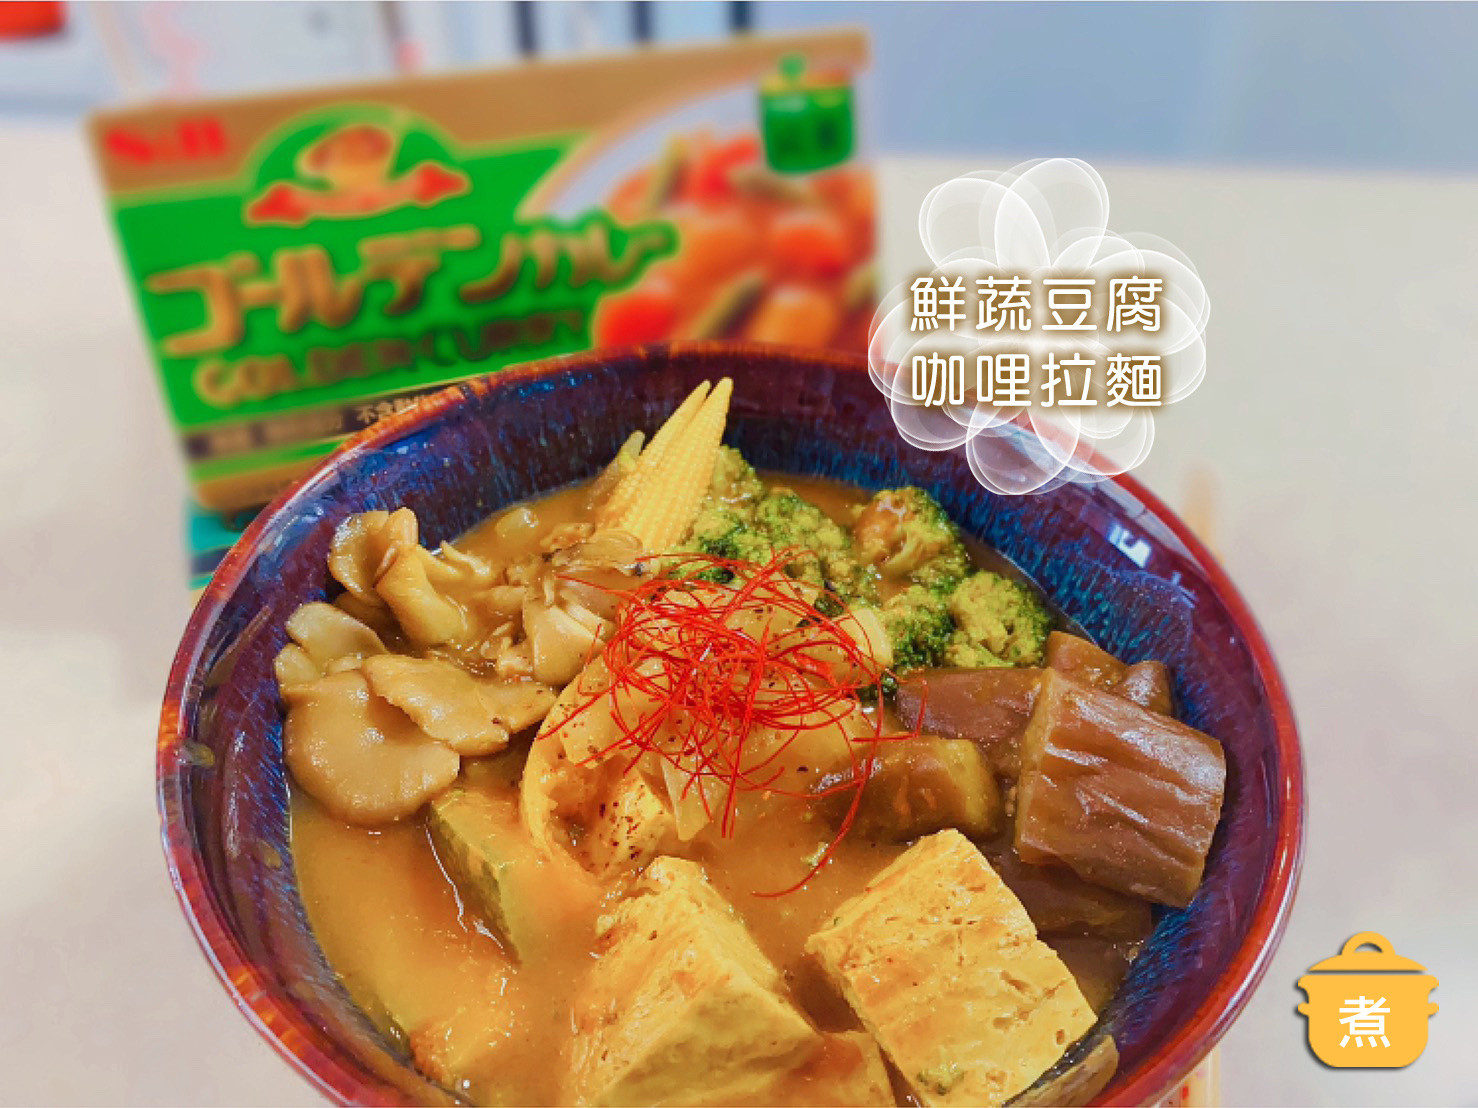 鮮蔬豆腐咖哩拉麵｜素食【S&B咖哩塊】